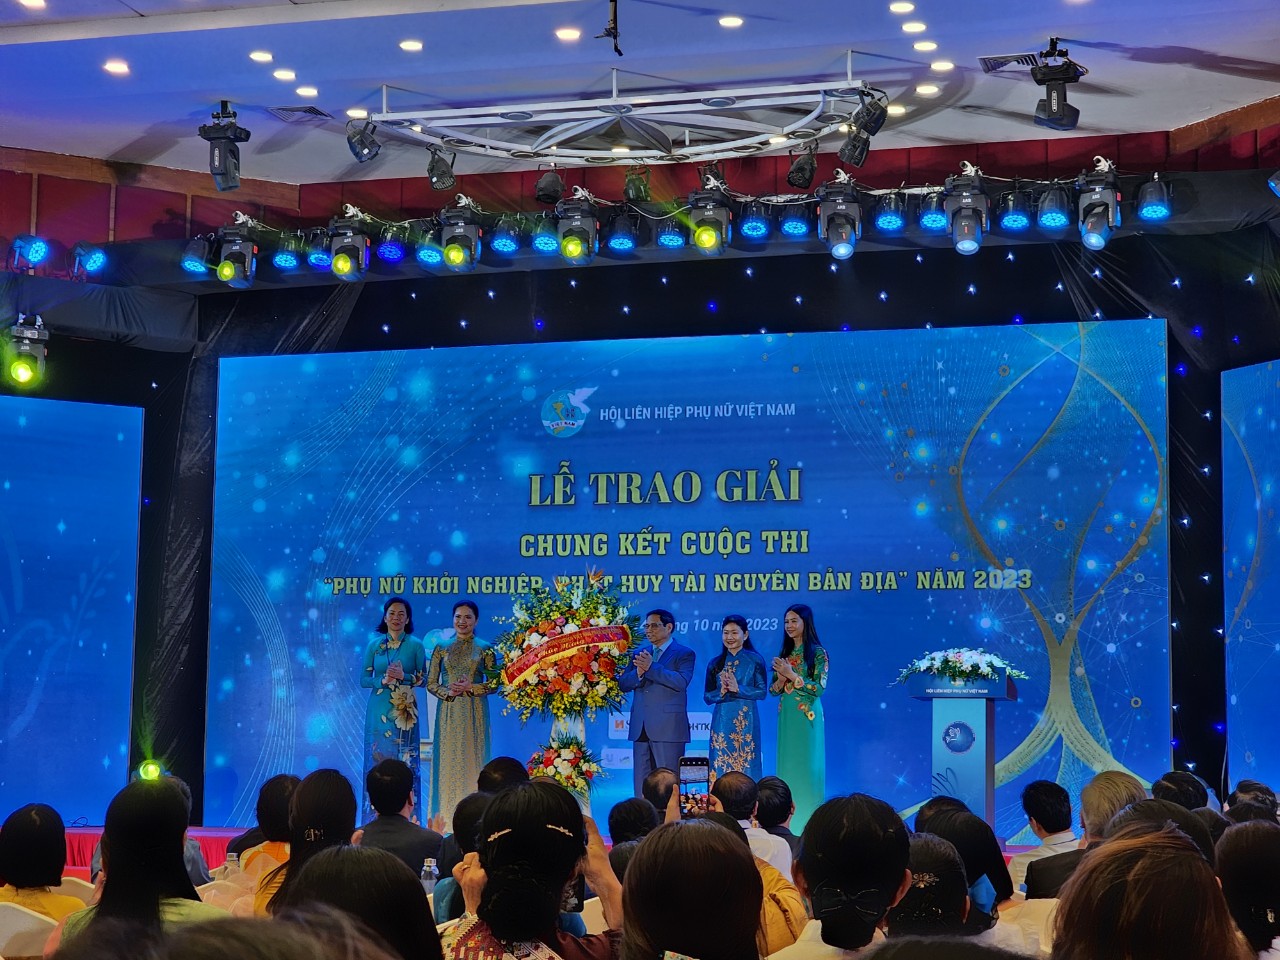 Thủ tướng Phạm Chính tặng hoa cho Lãnh đạo Hội Liên hiệp Phụ nữ